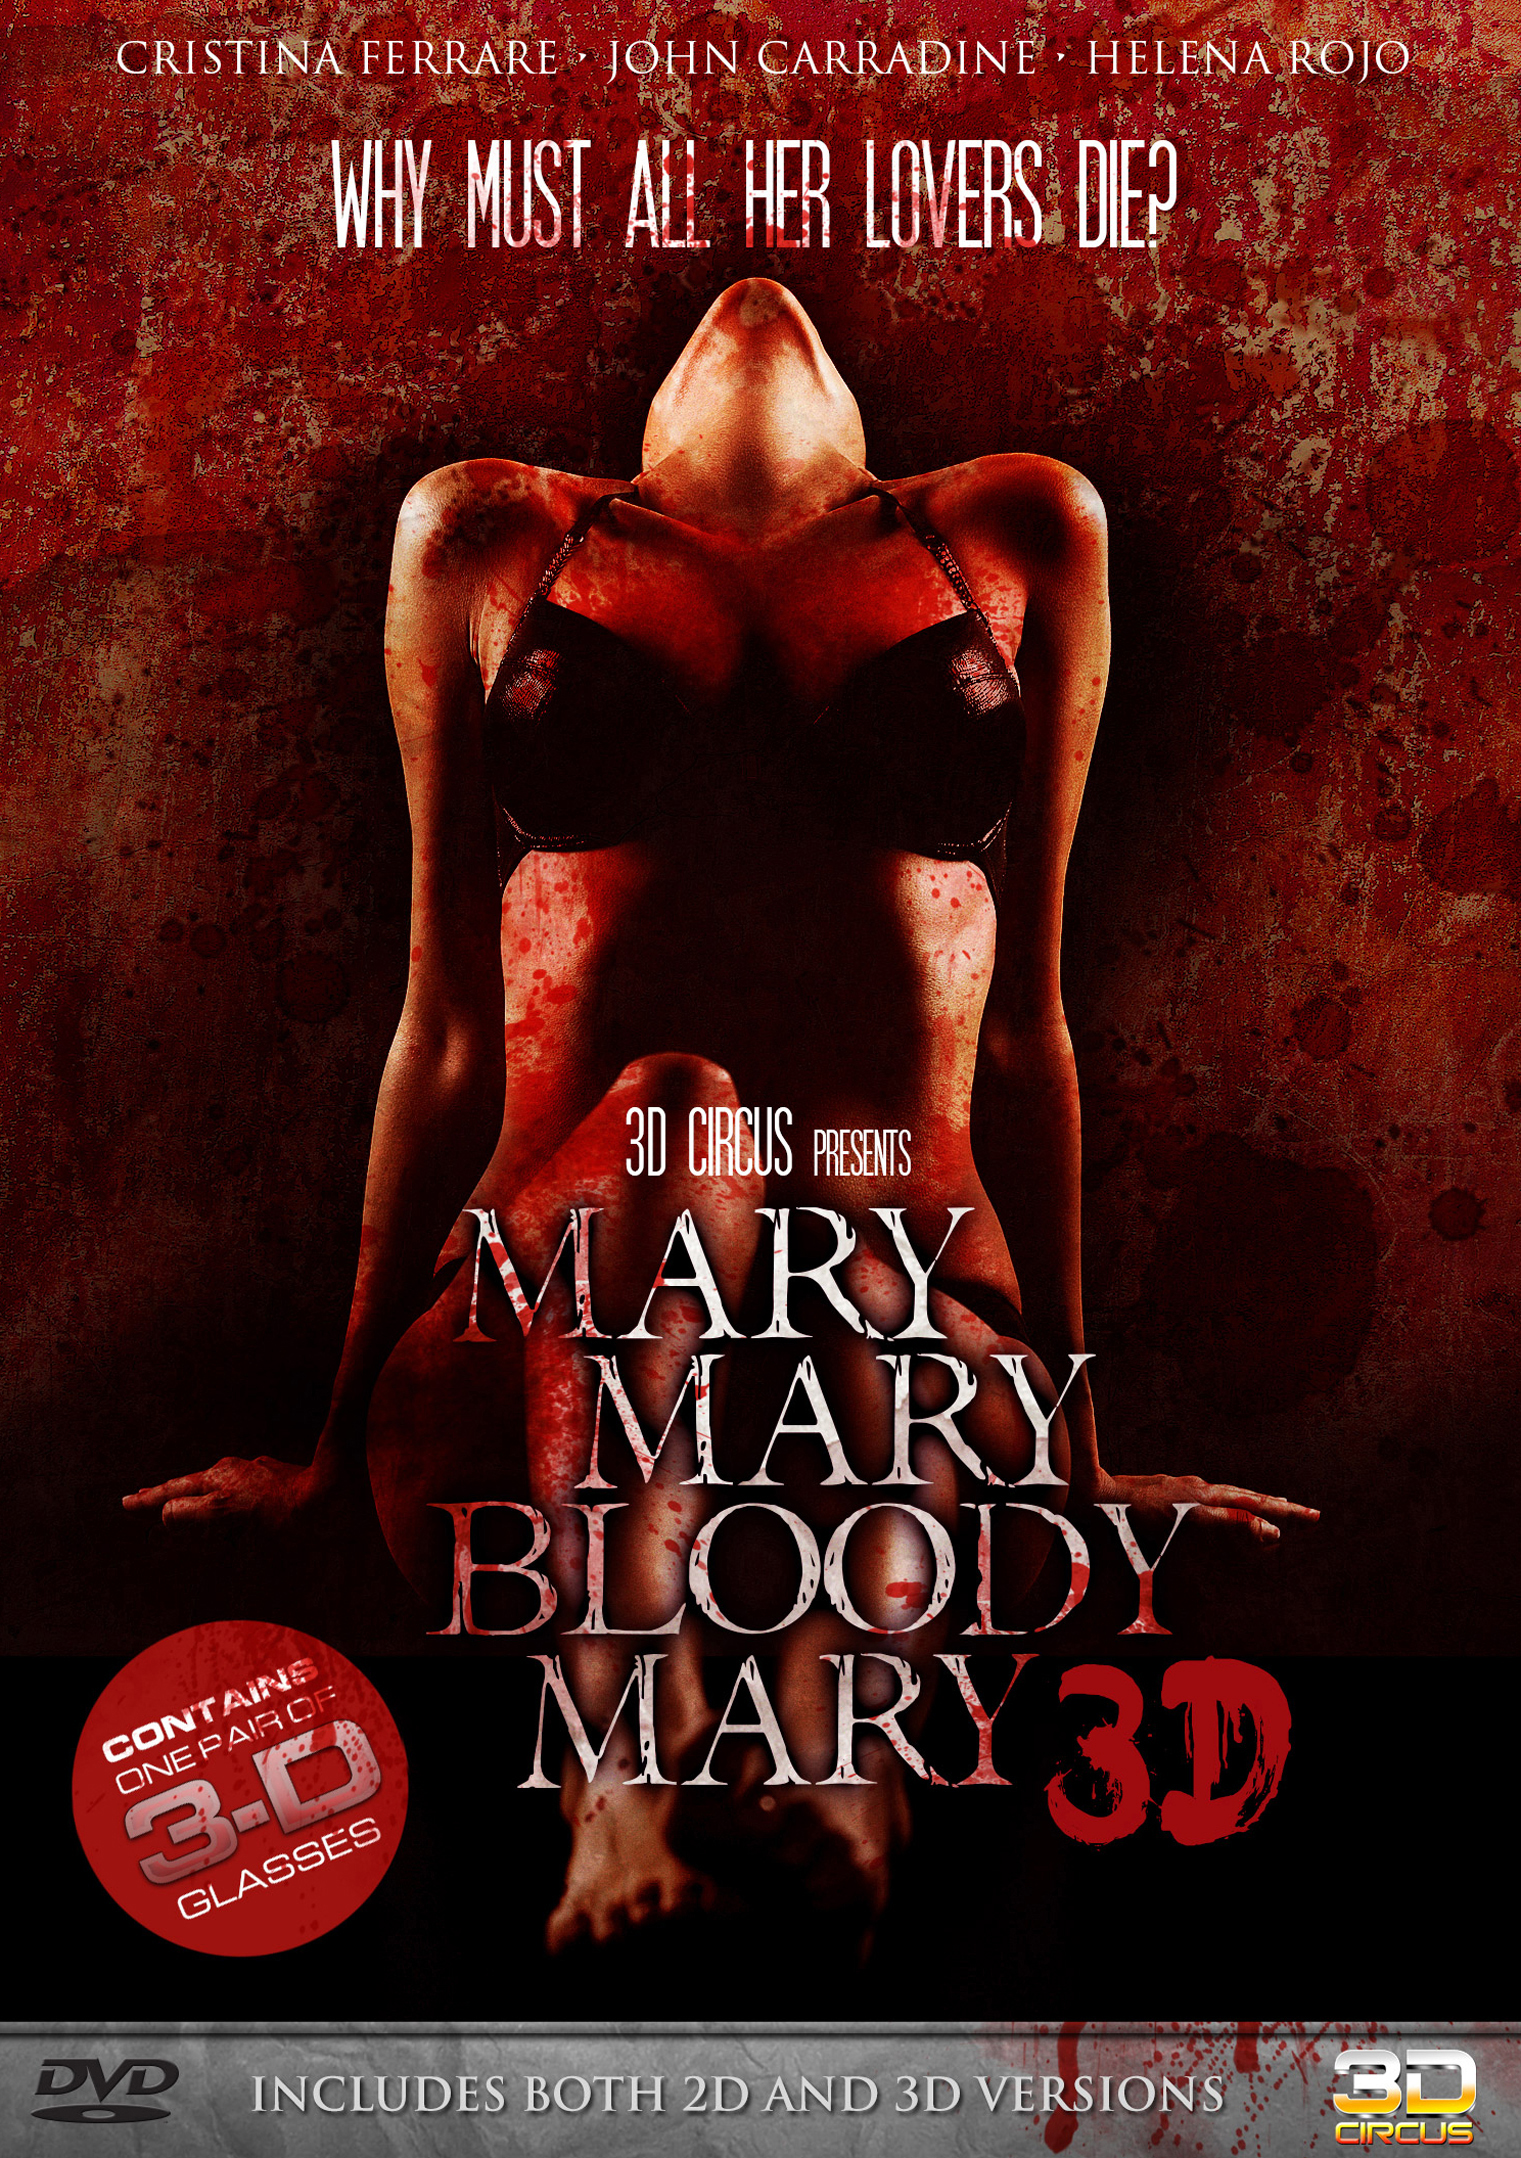 MARY MARY BLOODY MARY / (3-D)